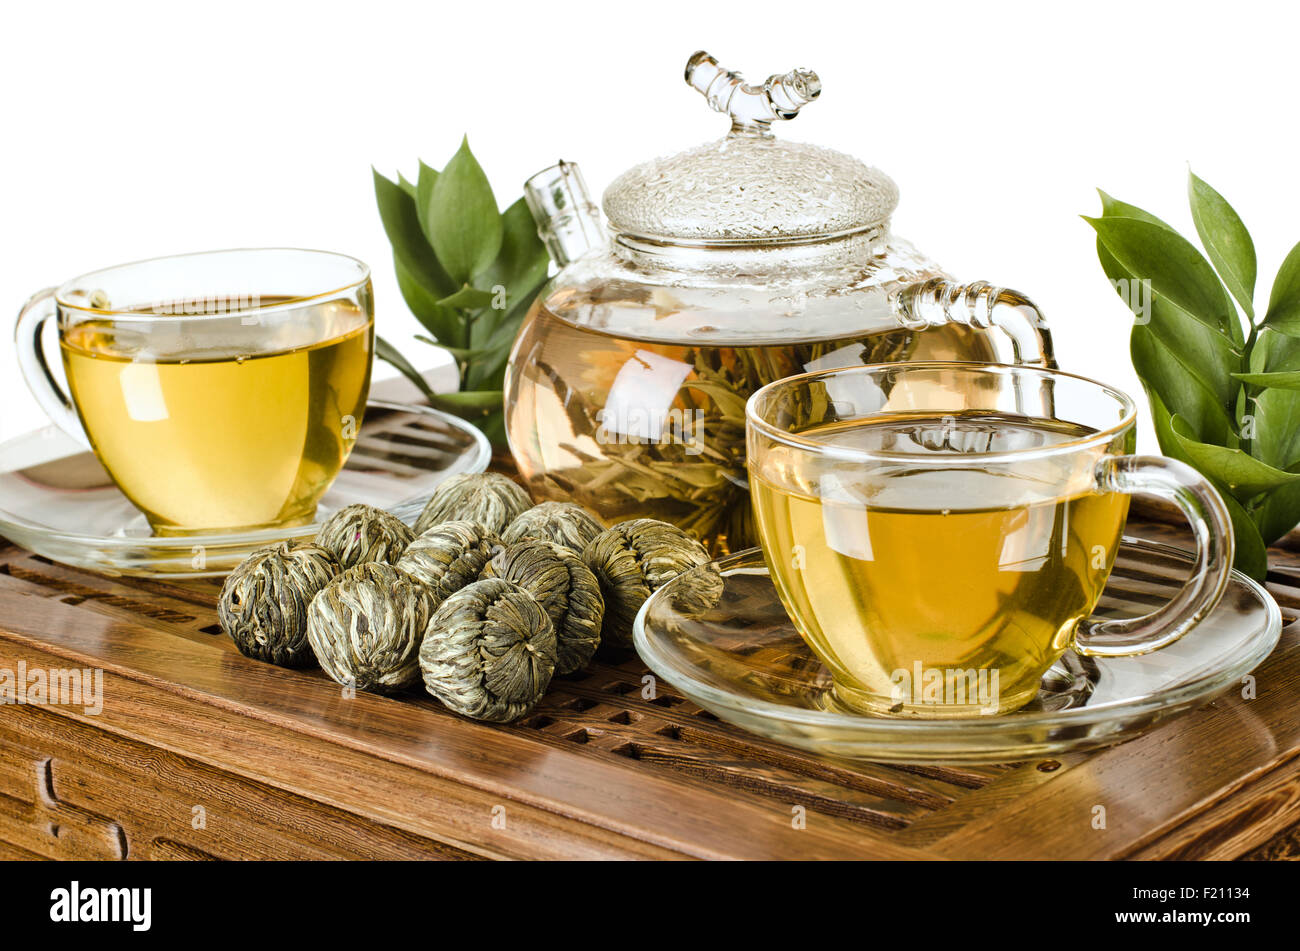 La vie toujours de la théière en verre tasse thé vert en débit en bois sur fond blanc, sous-plat, isolé, cérémonie du thé Banque D'Images